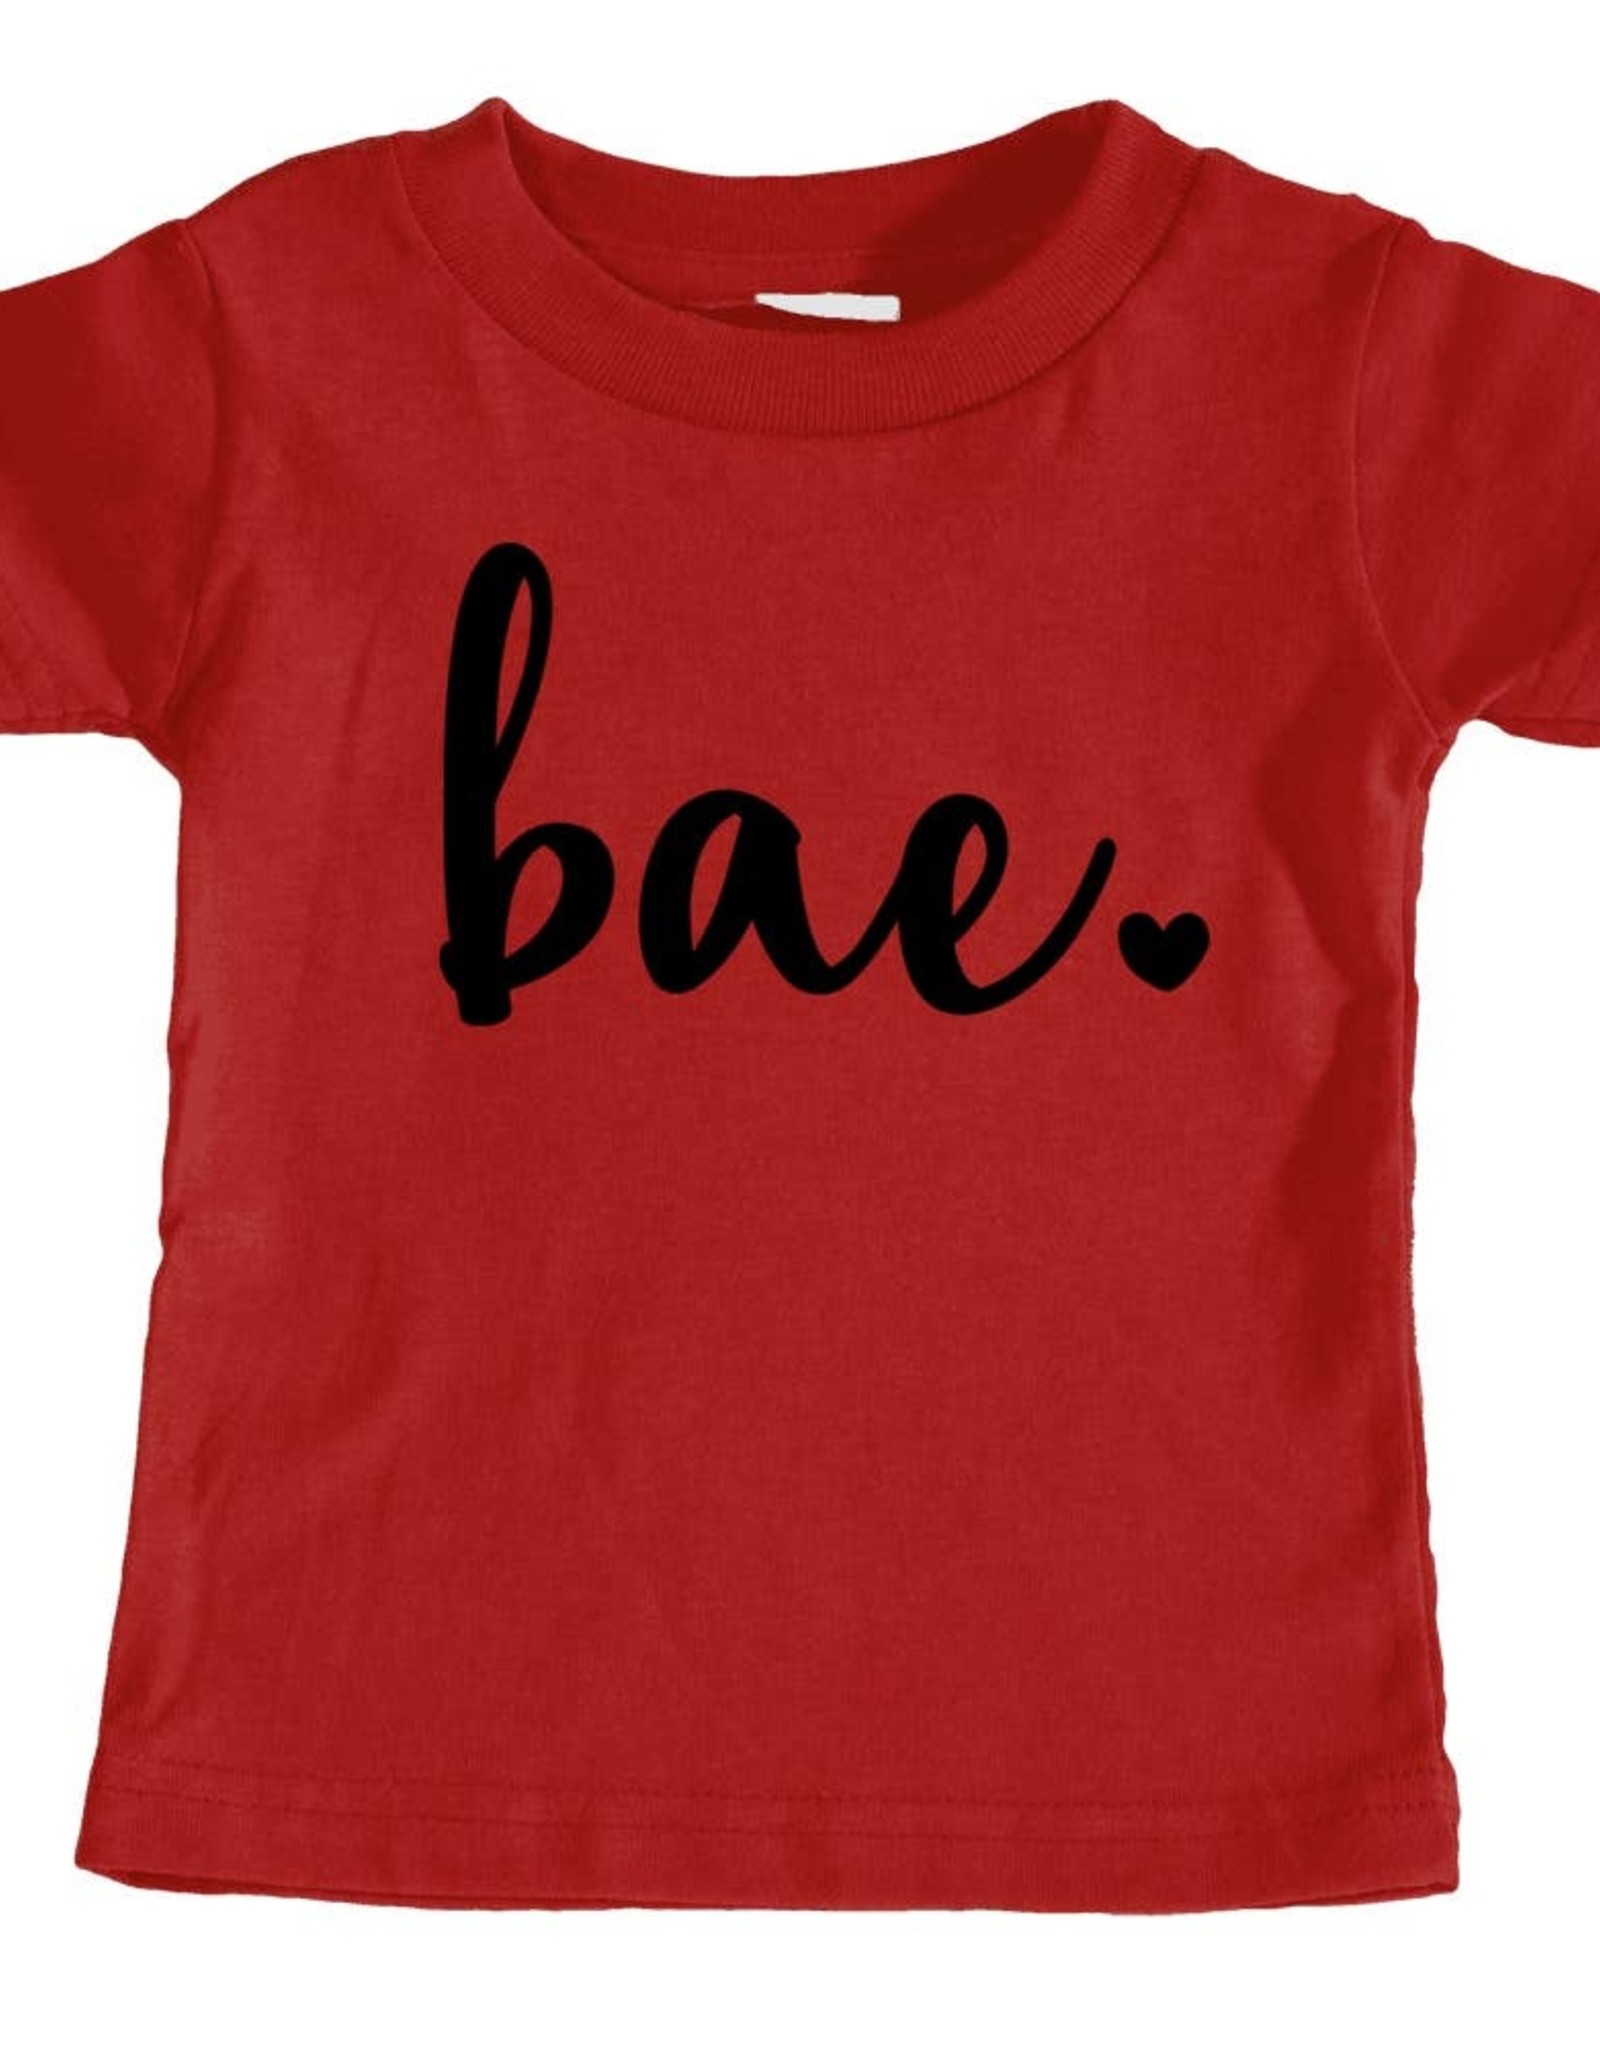 Bae T-Shirt